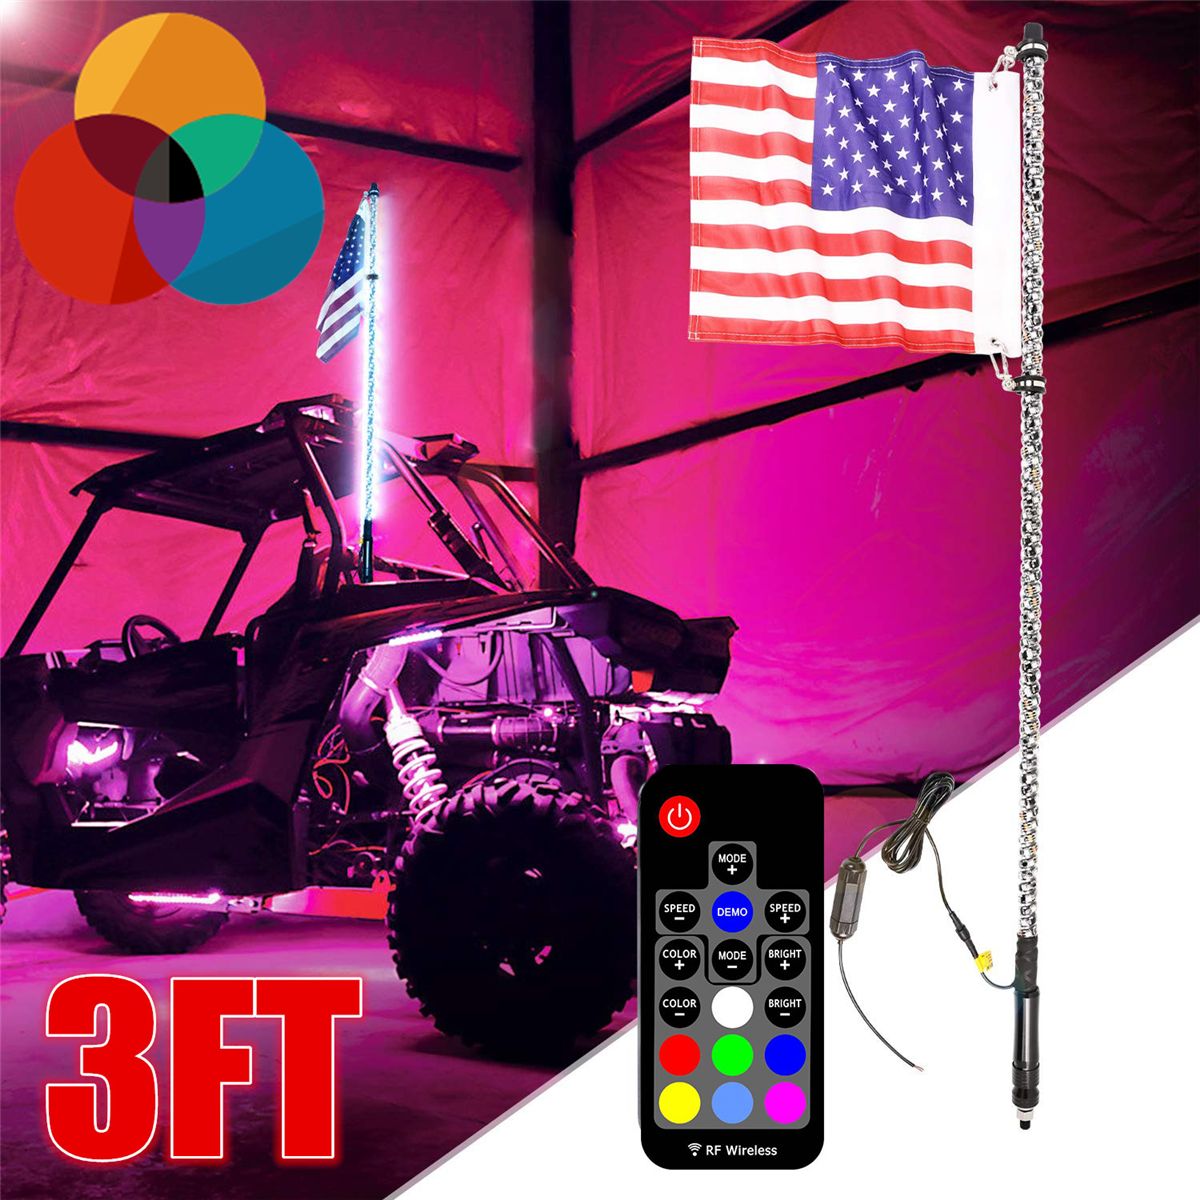 3FT-09M-RGB-LED-Bulb-Whip-360deg-Spiral-with-US-Flag--Remote-For-SUV-ATV-RZR-UTV-1621080